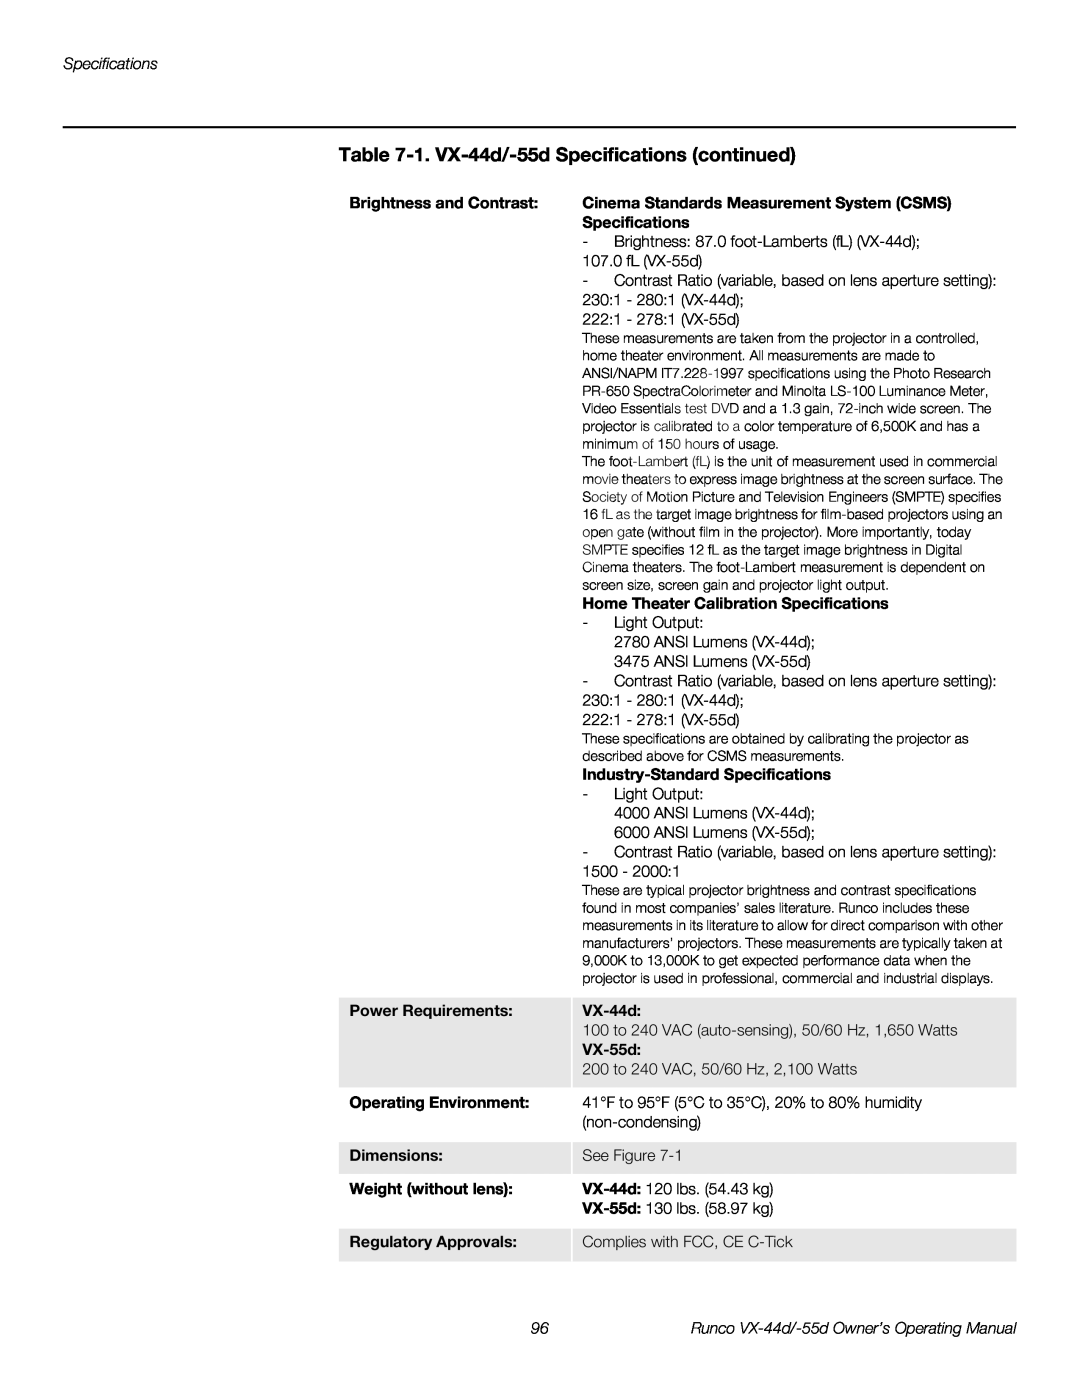 Runco VX-44D, VX-55D manual 1. VX-44d/-55d Specifications continued 